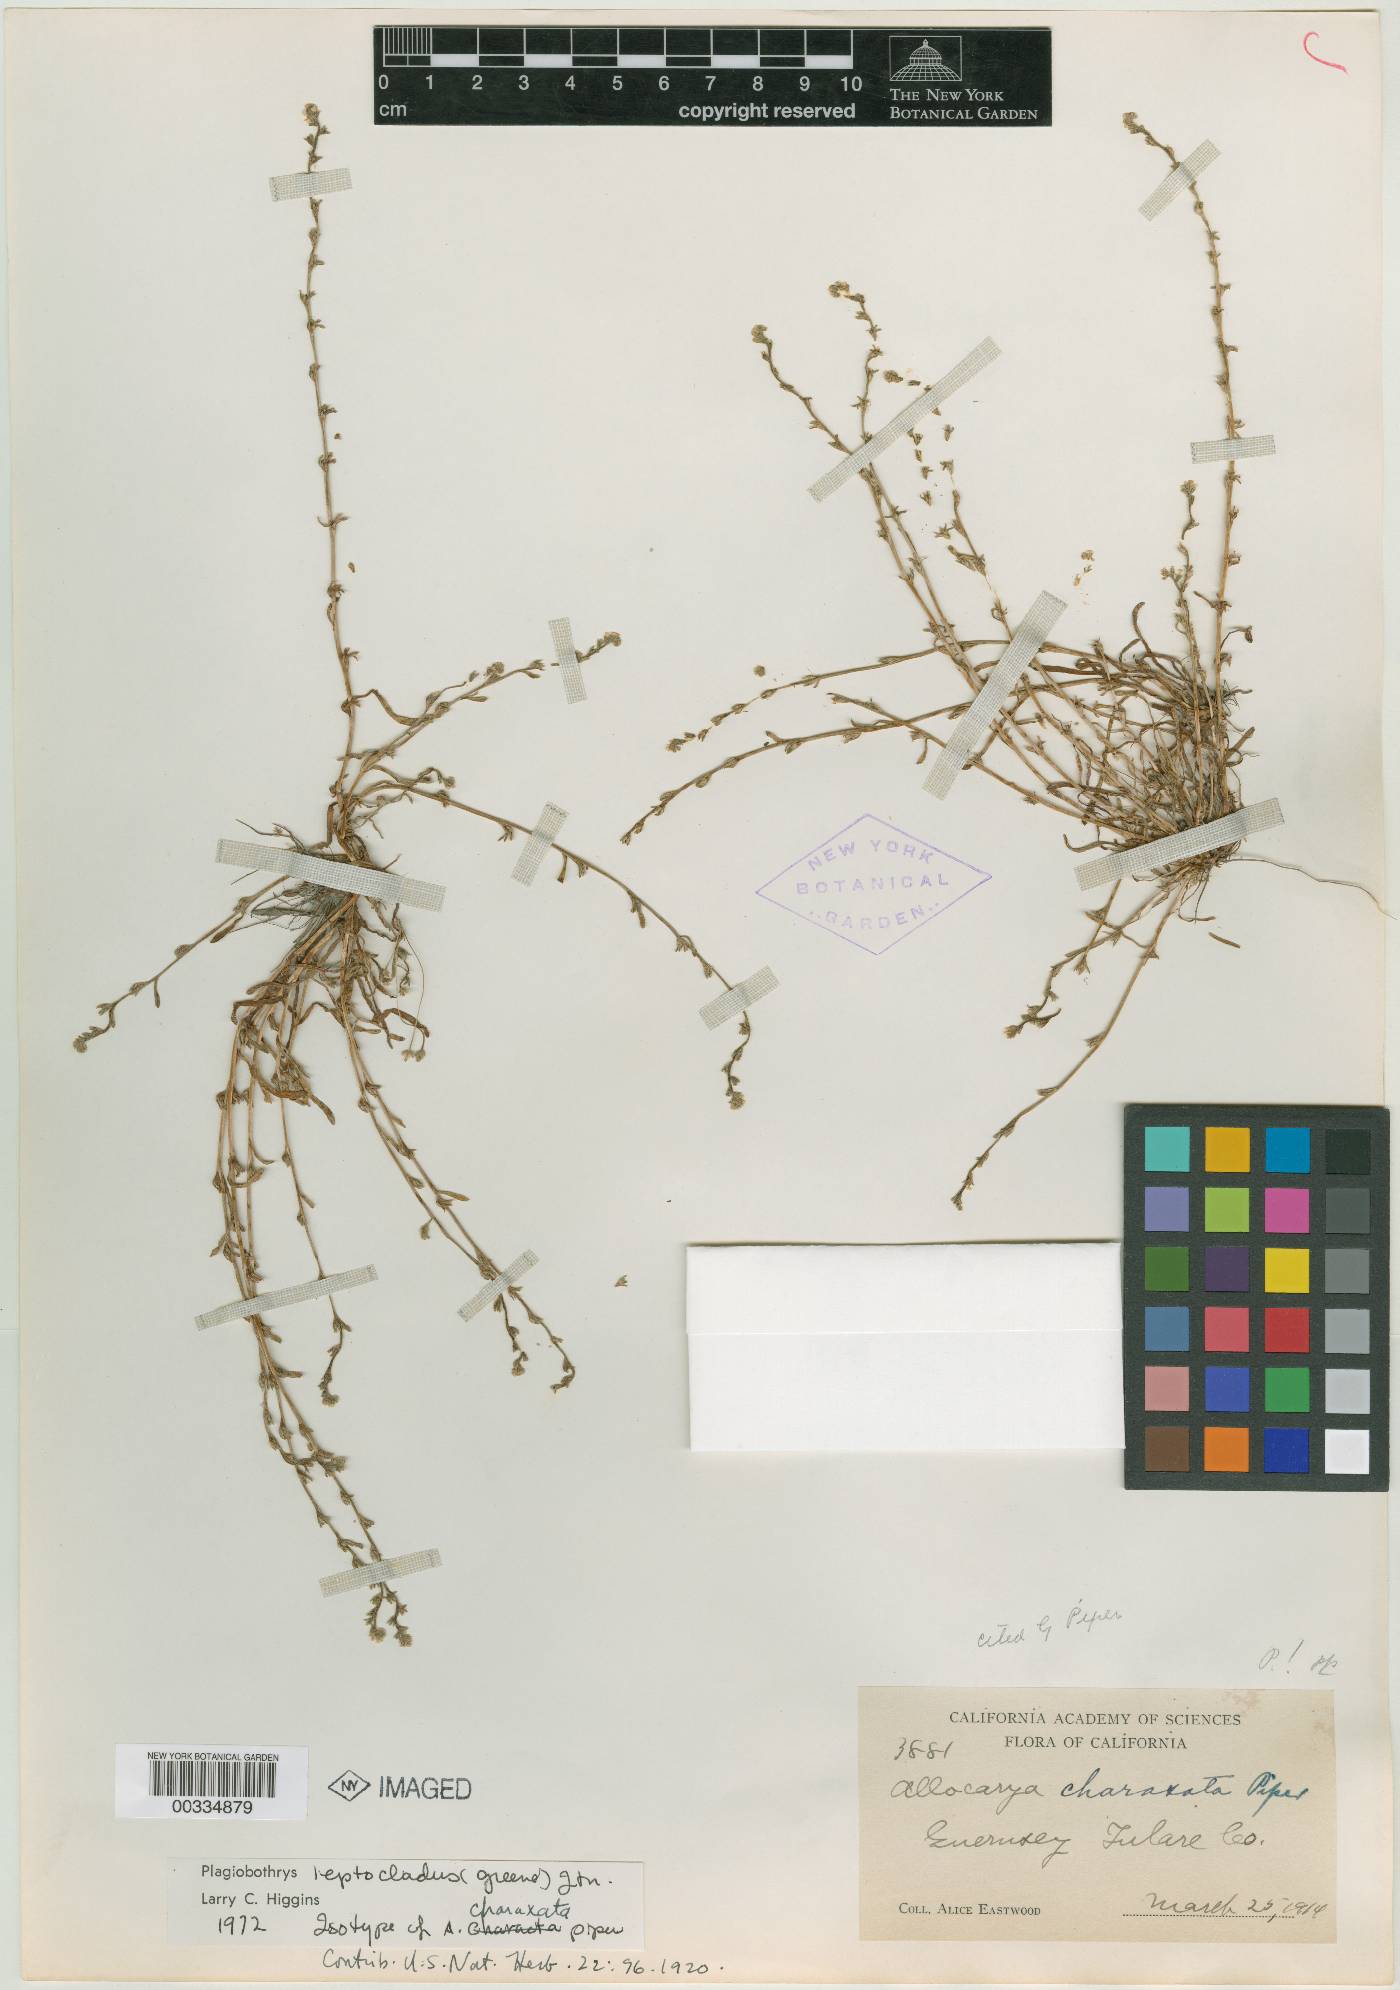 Allocarya charaxata image